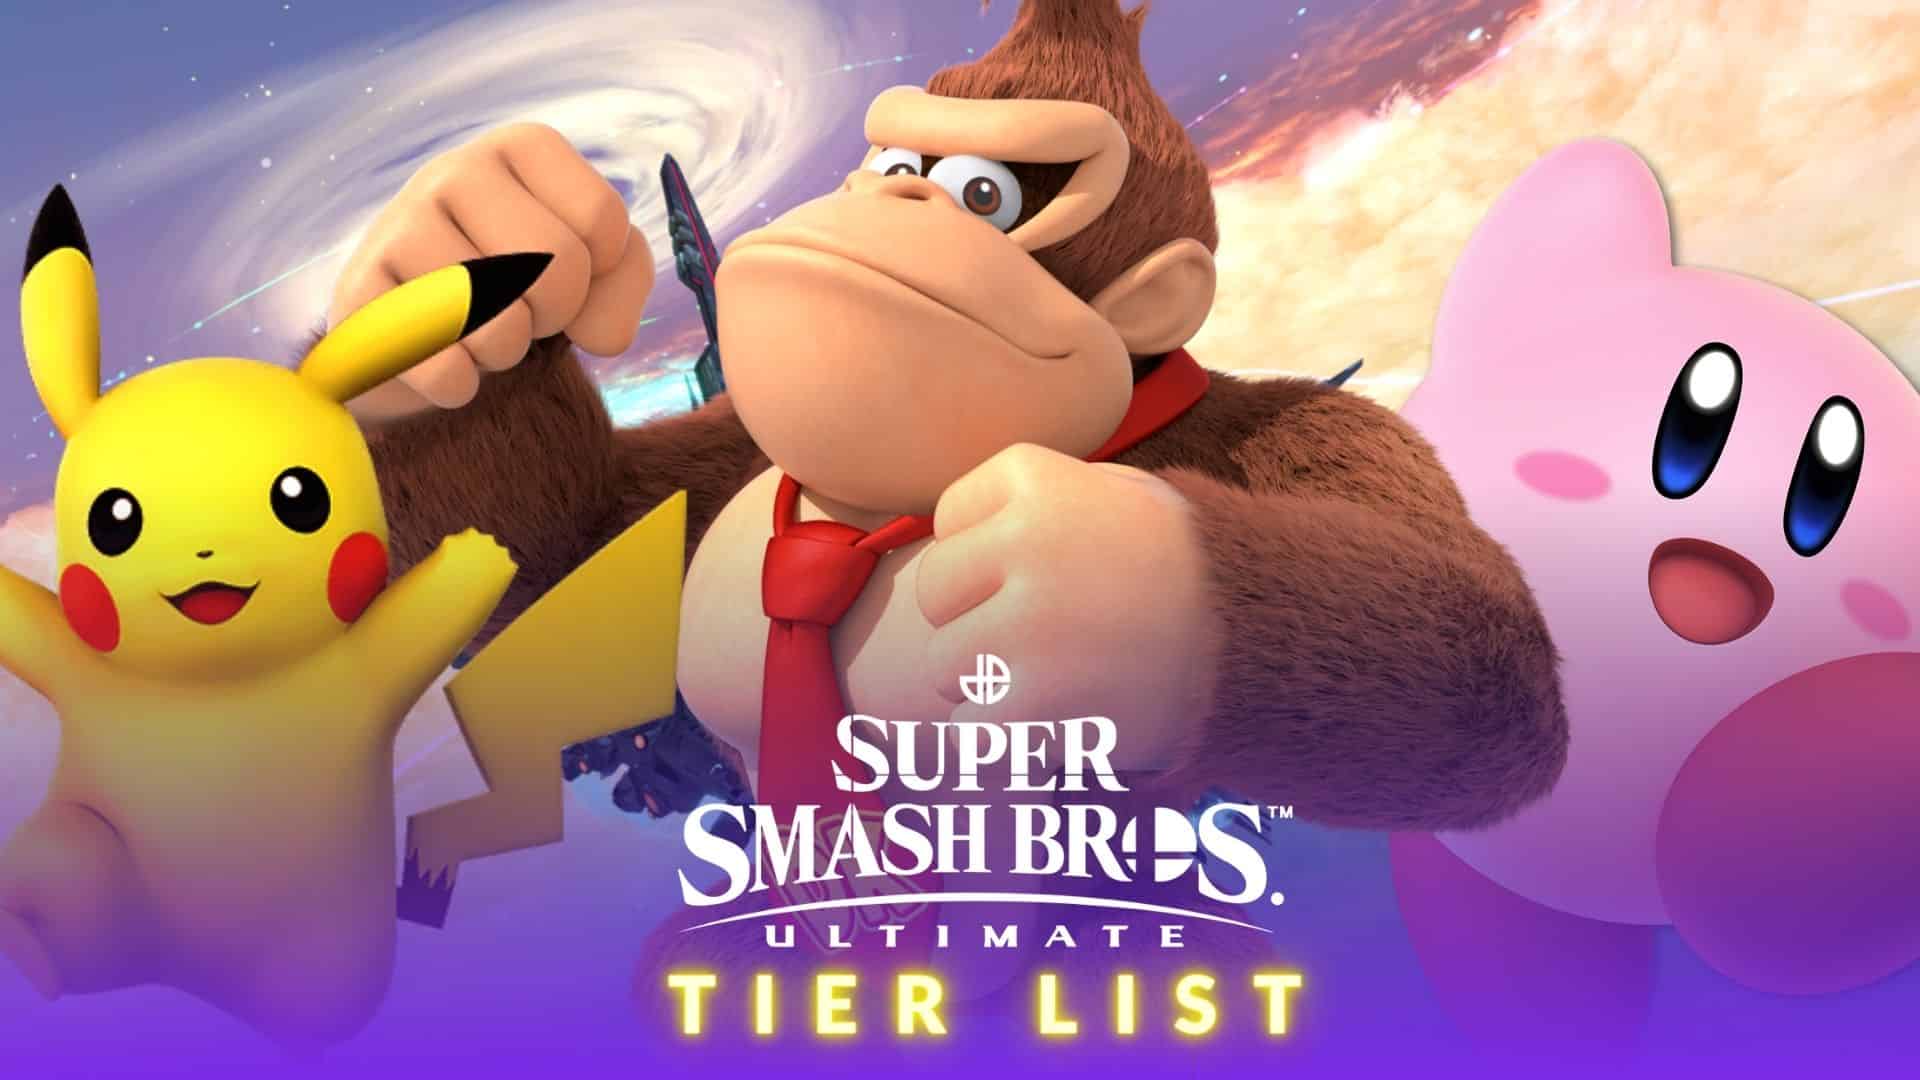 Super Smash Bros Ultimate tier list: Best fighters ranked - Dexerto